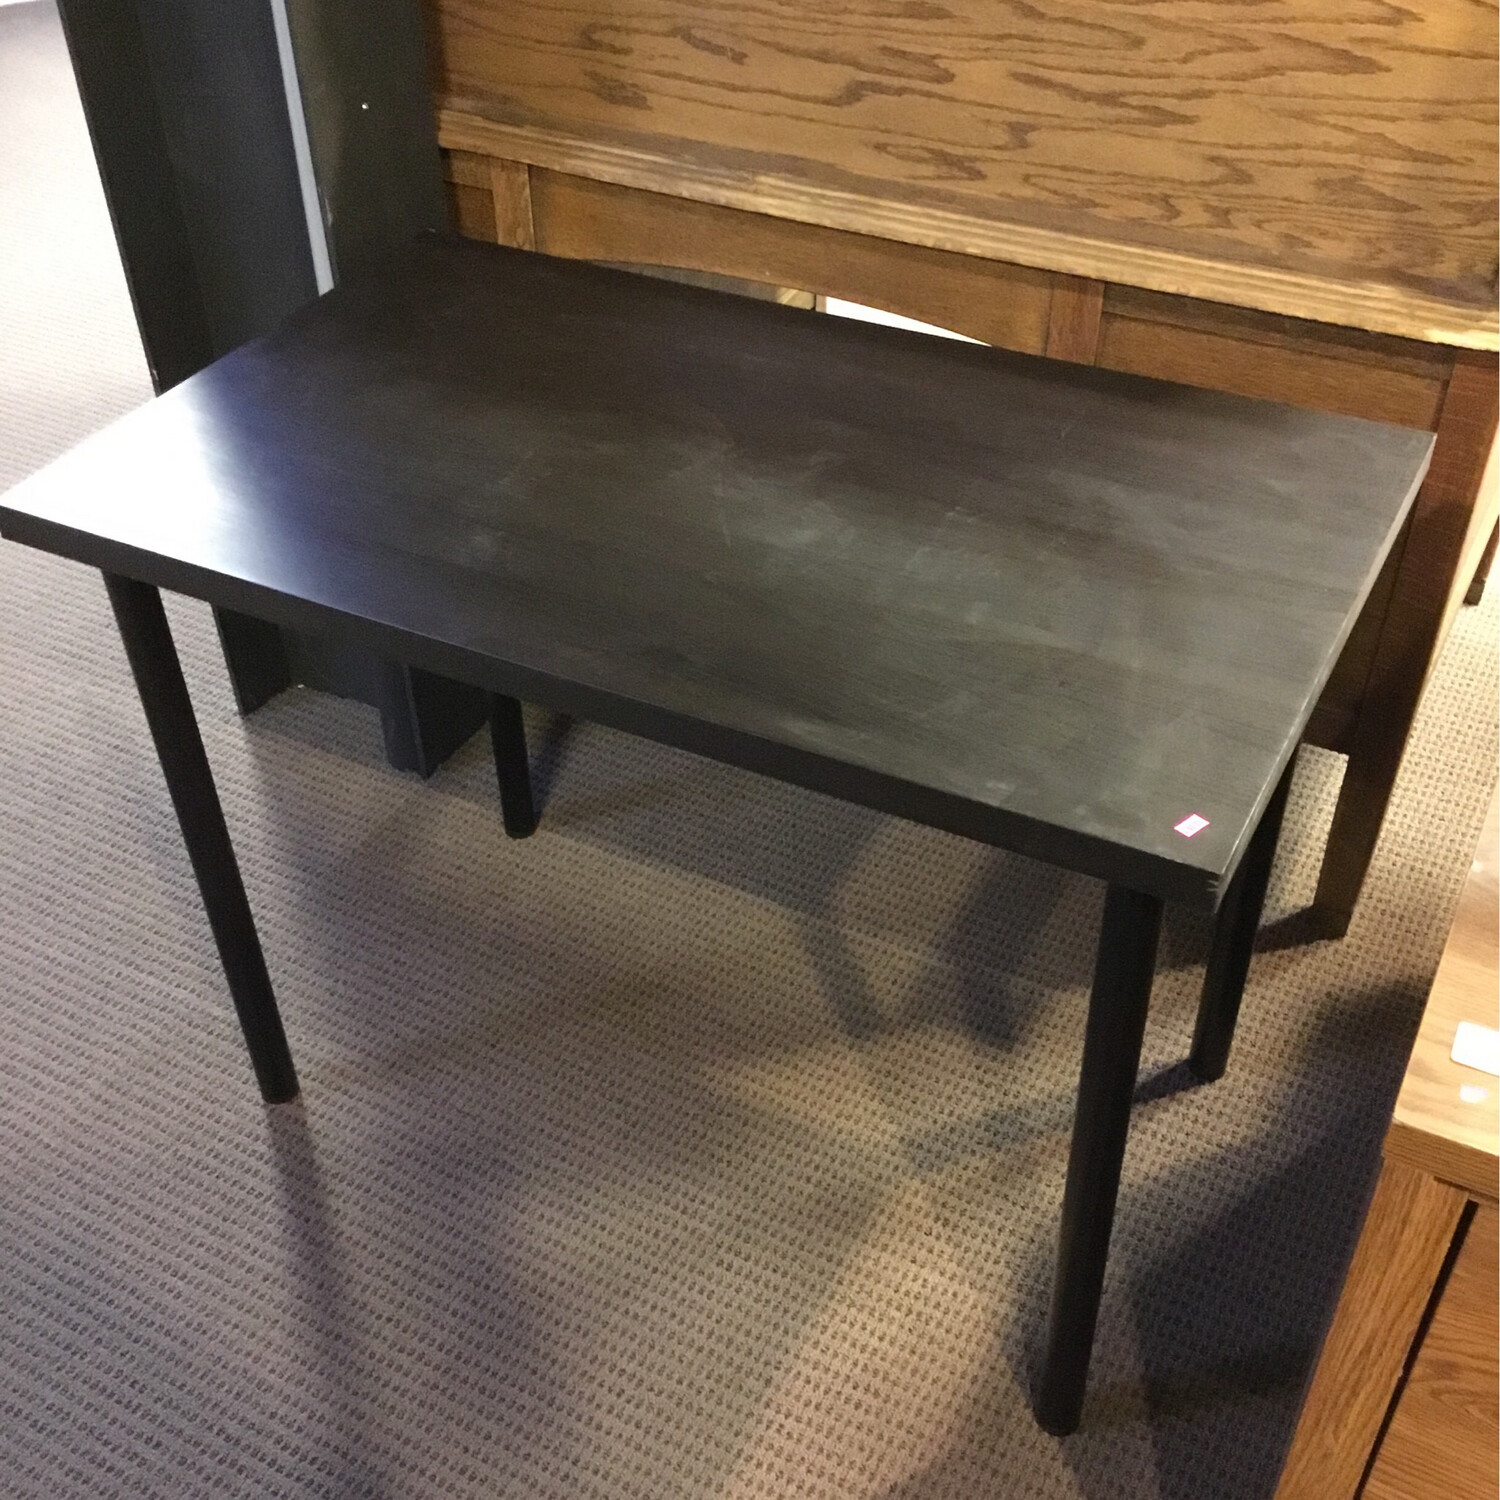 Dark Colored Small Desk